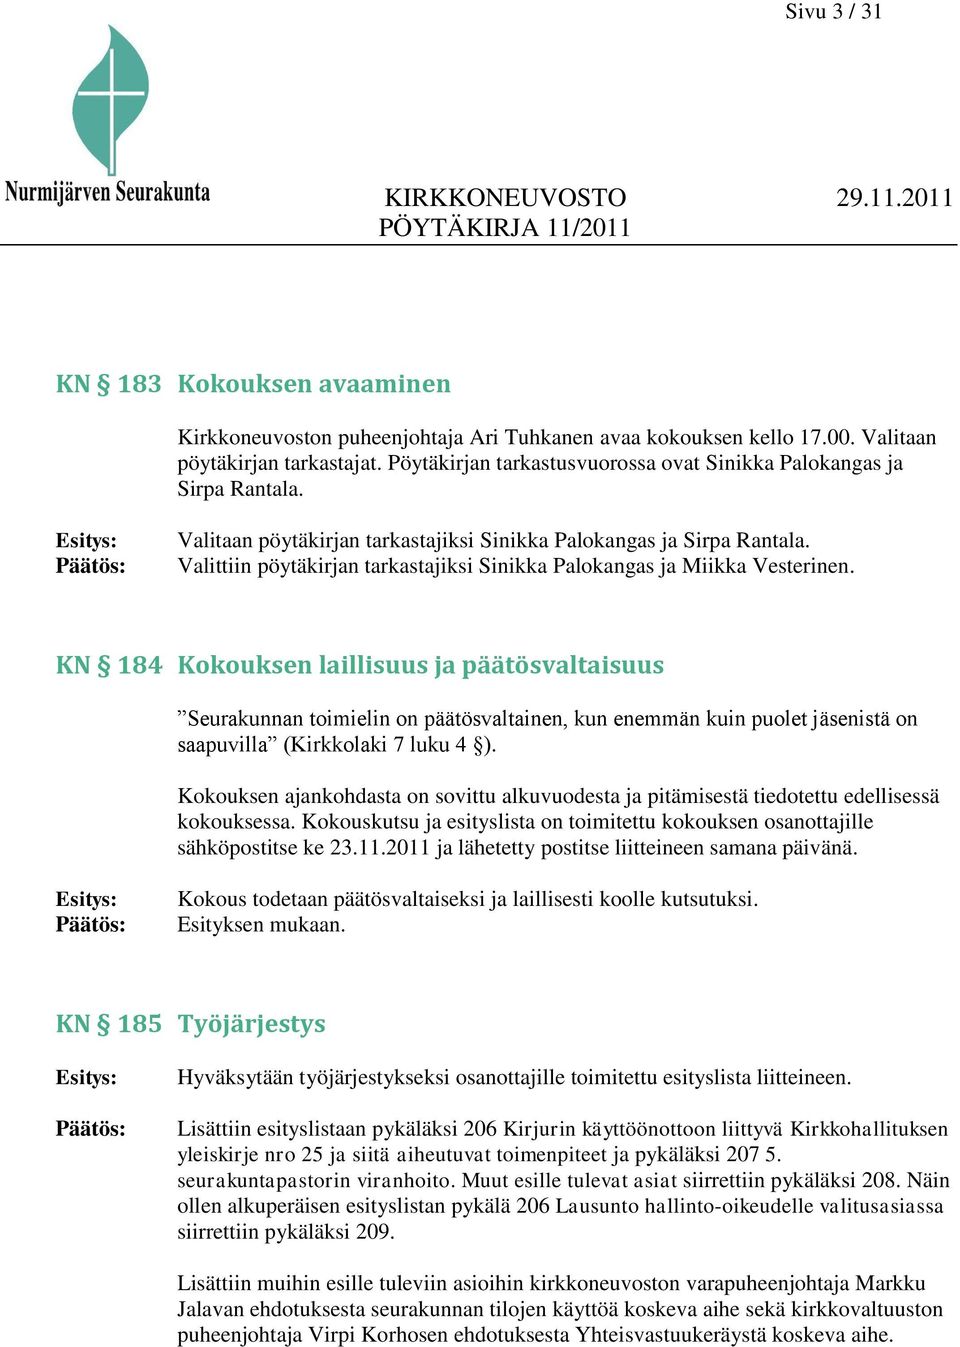 Valittiin pöytäkirjan tarkastajiksi Sinikka Palokangas ja Miikka Vesterinen.